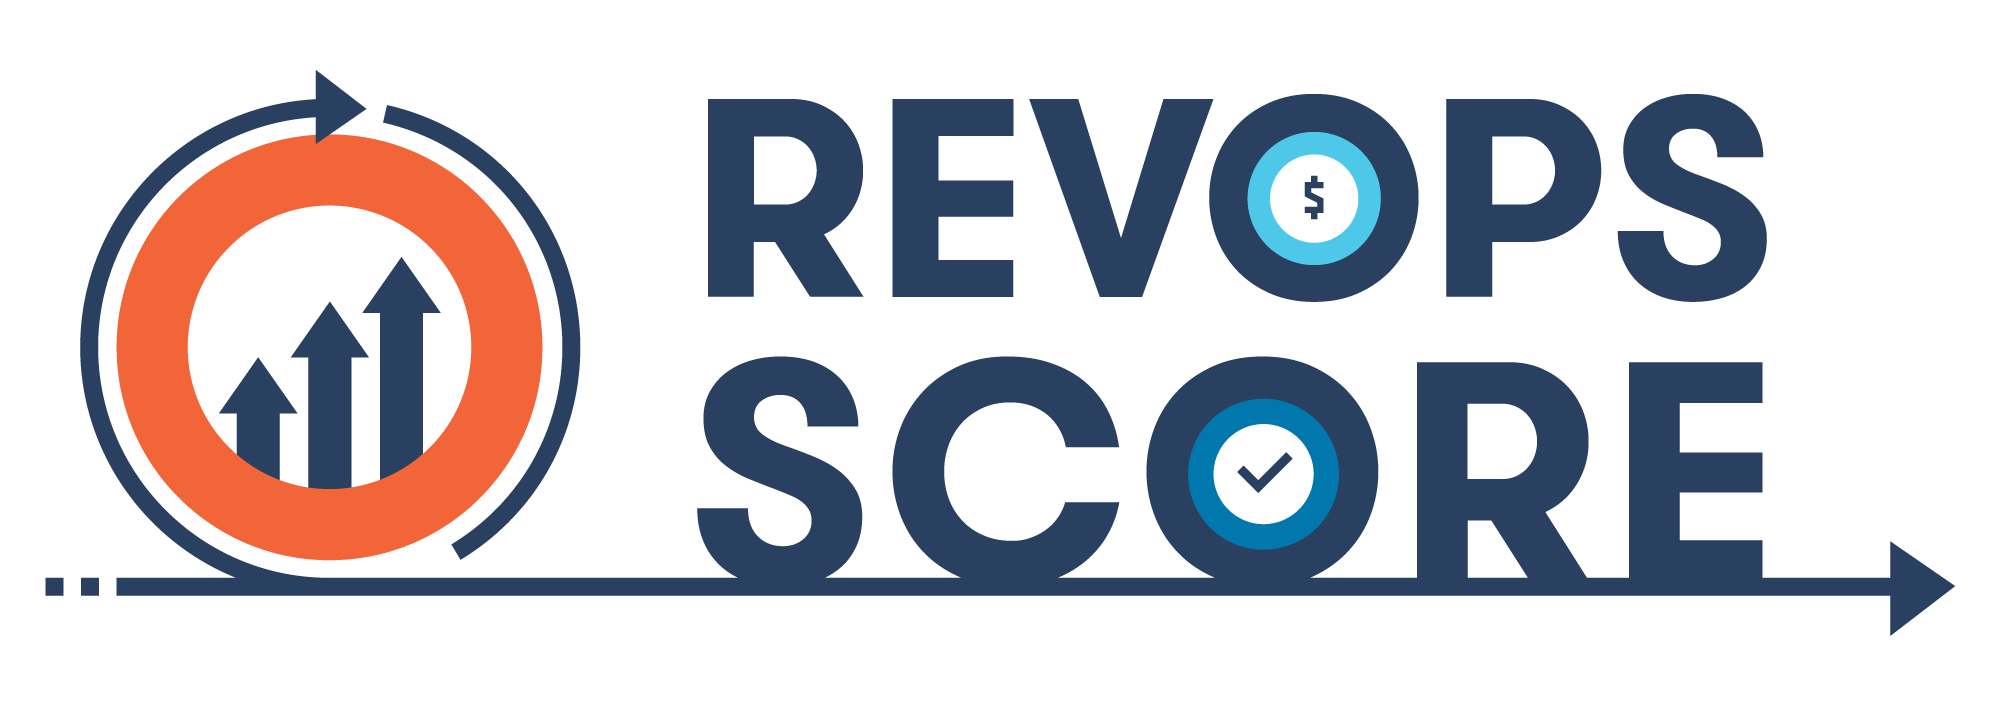 RevOps-Score-Logo-FullColor